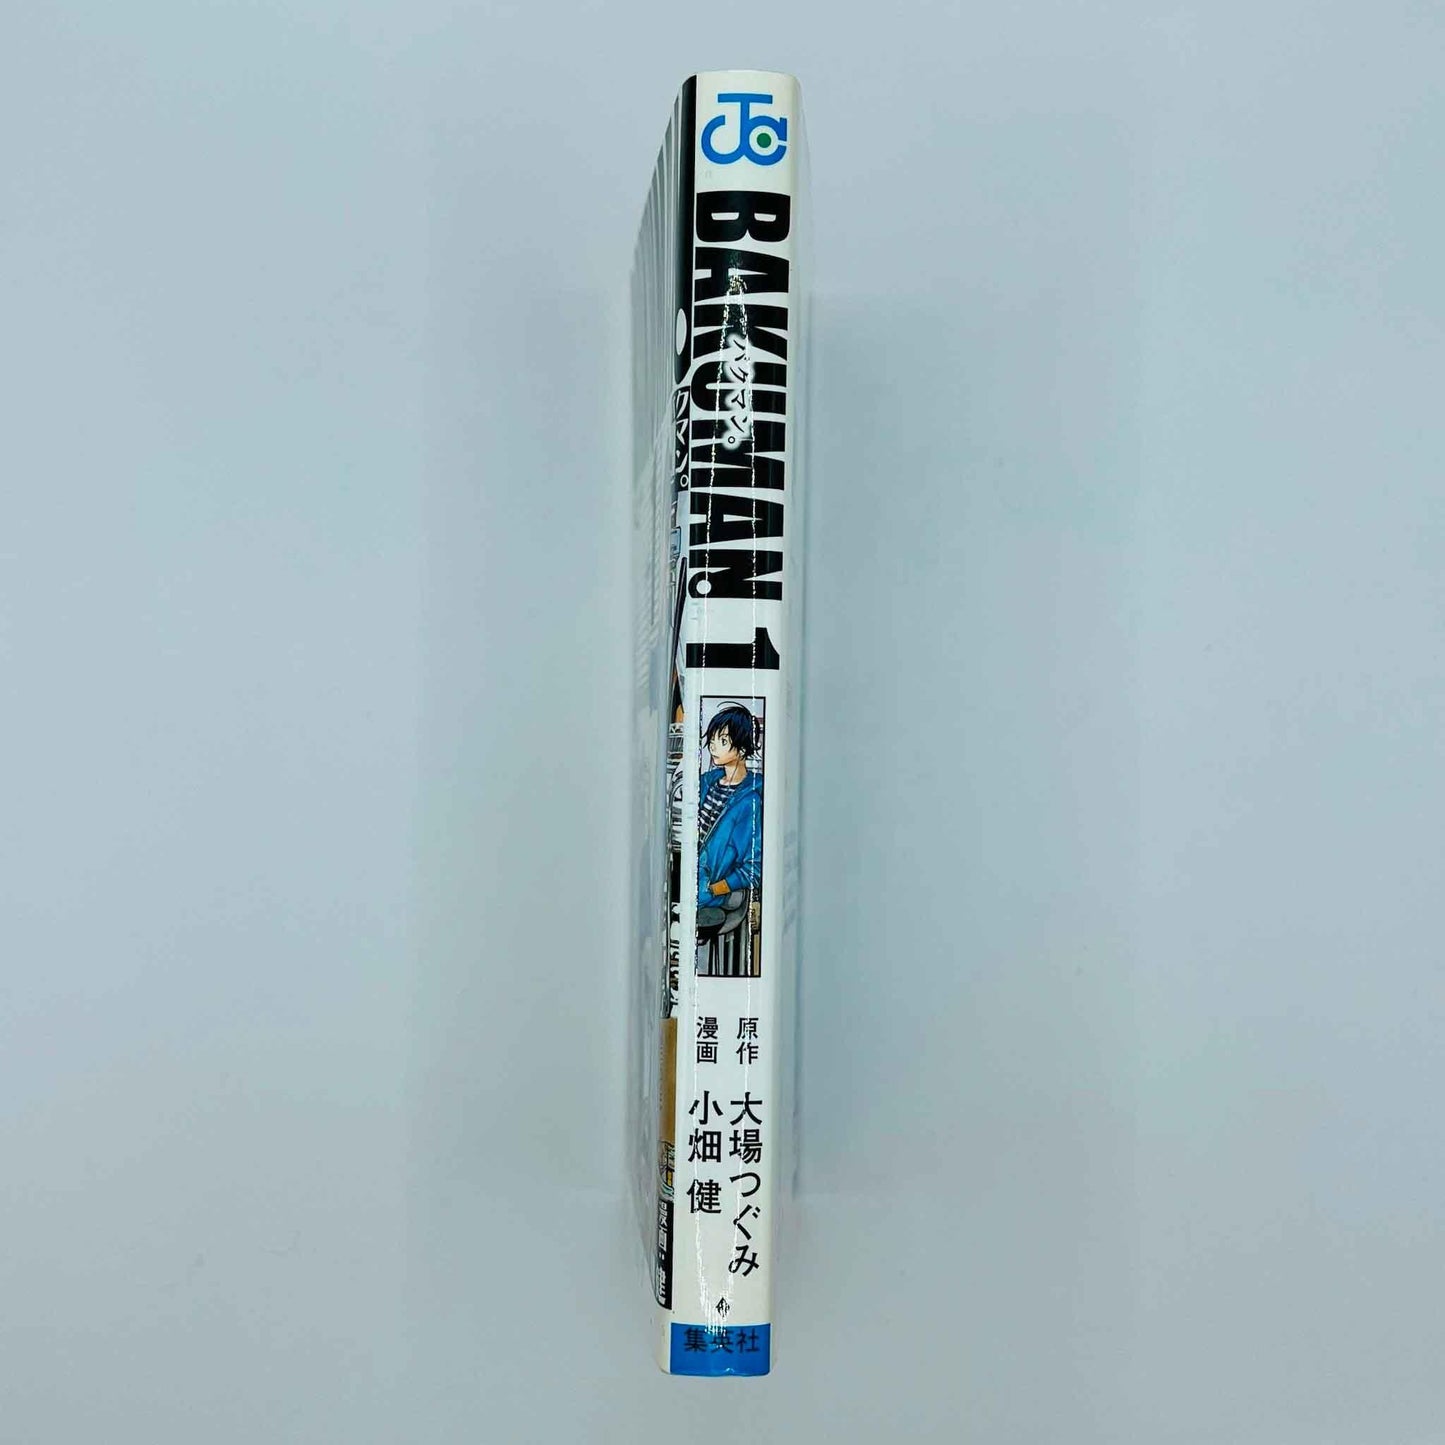 Bakuman - Volume 01 - 1stPrint.net - 1st First Print Edition Manga Store - M-BAKU-01-001